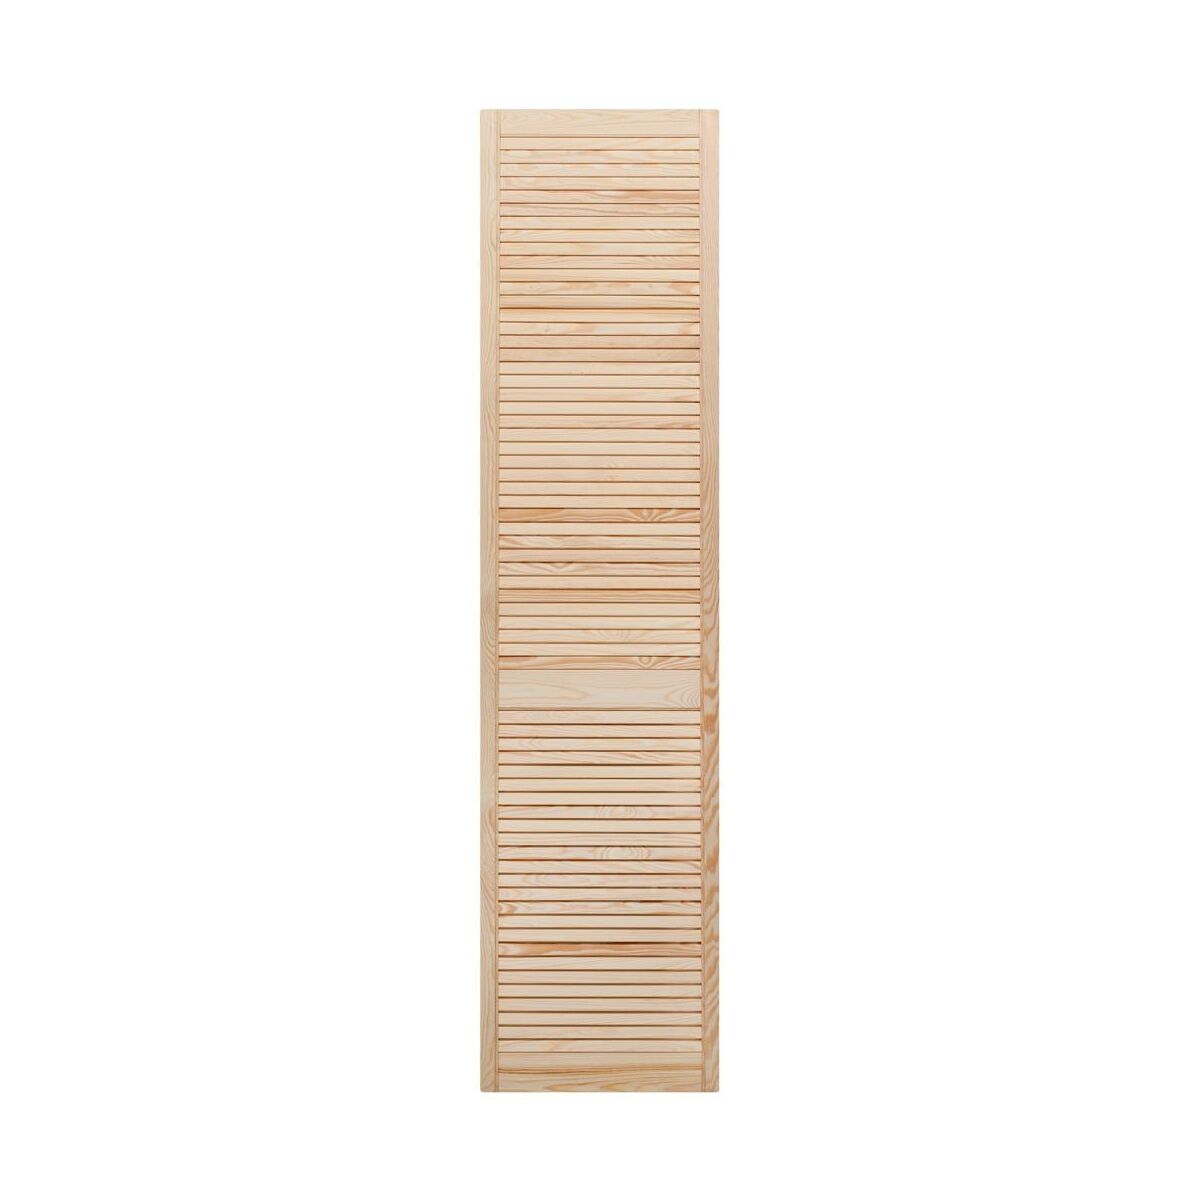 Drzwiczki ażurowe 201.3 x 49.4 cm Floorpol